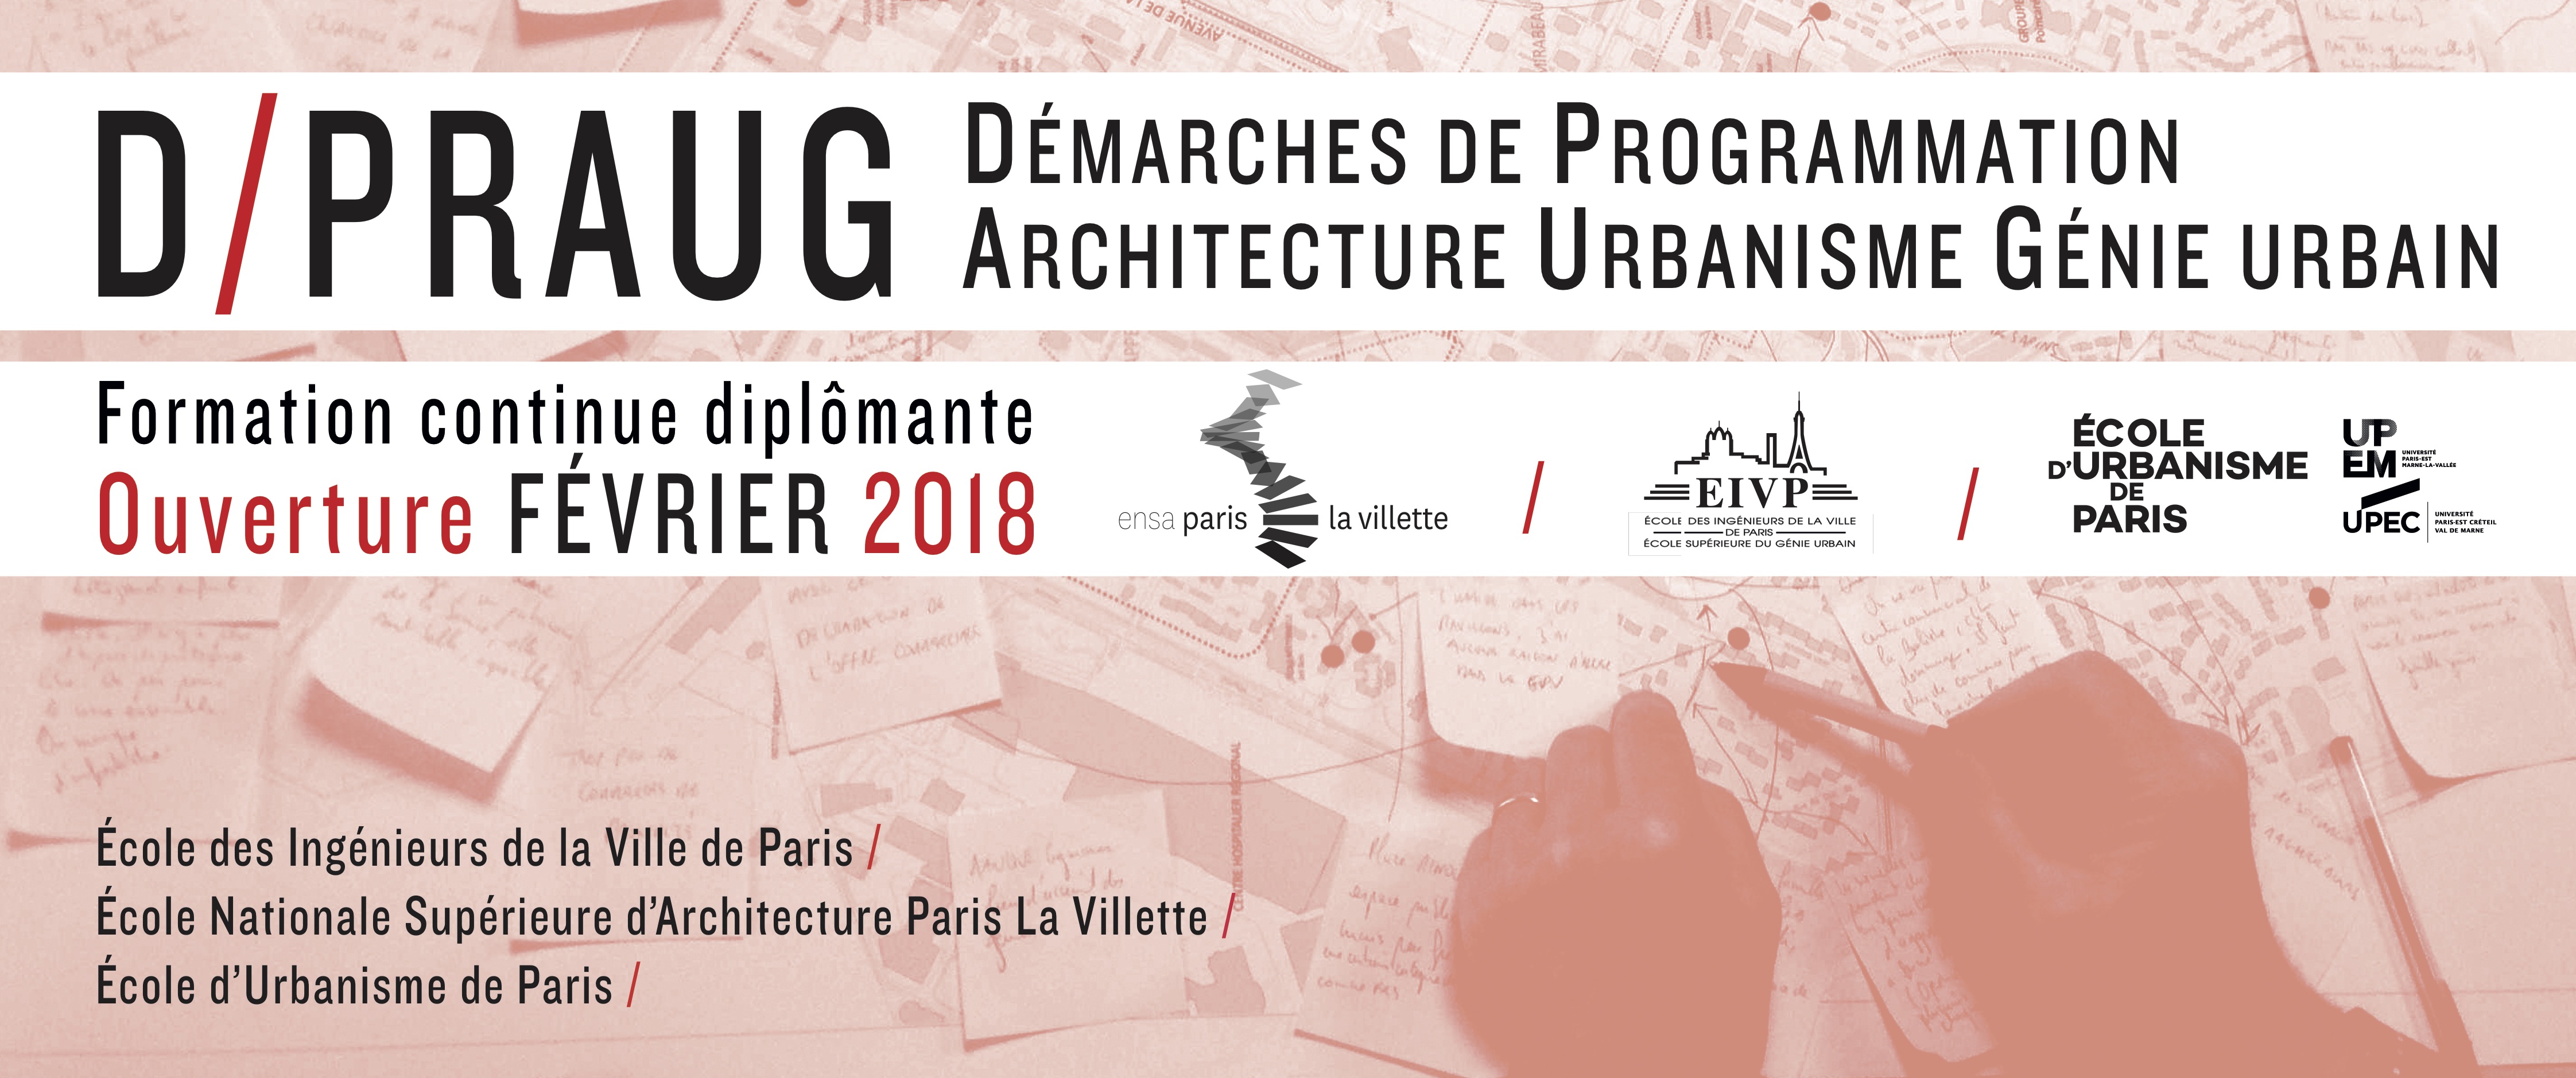 D/PRAUG : Démarche de Programmation Architecture Urbanisme Génie Urbain